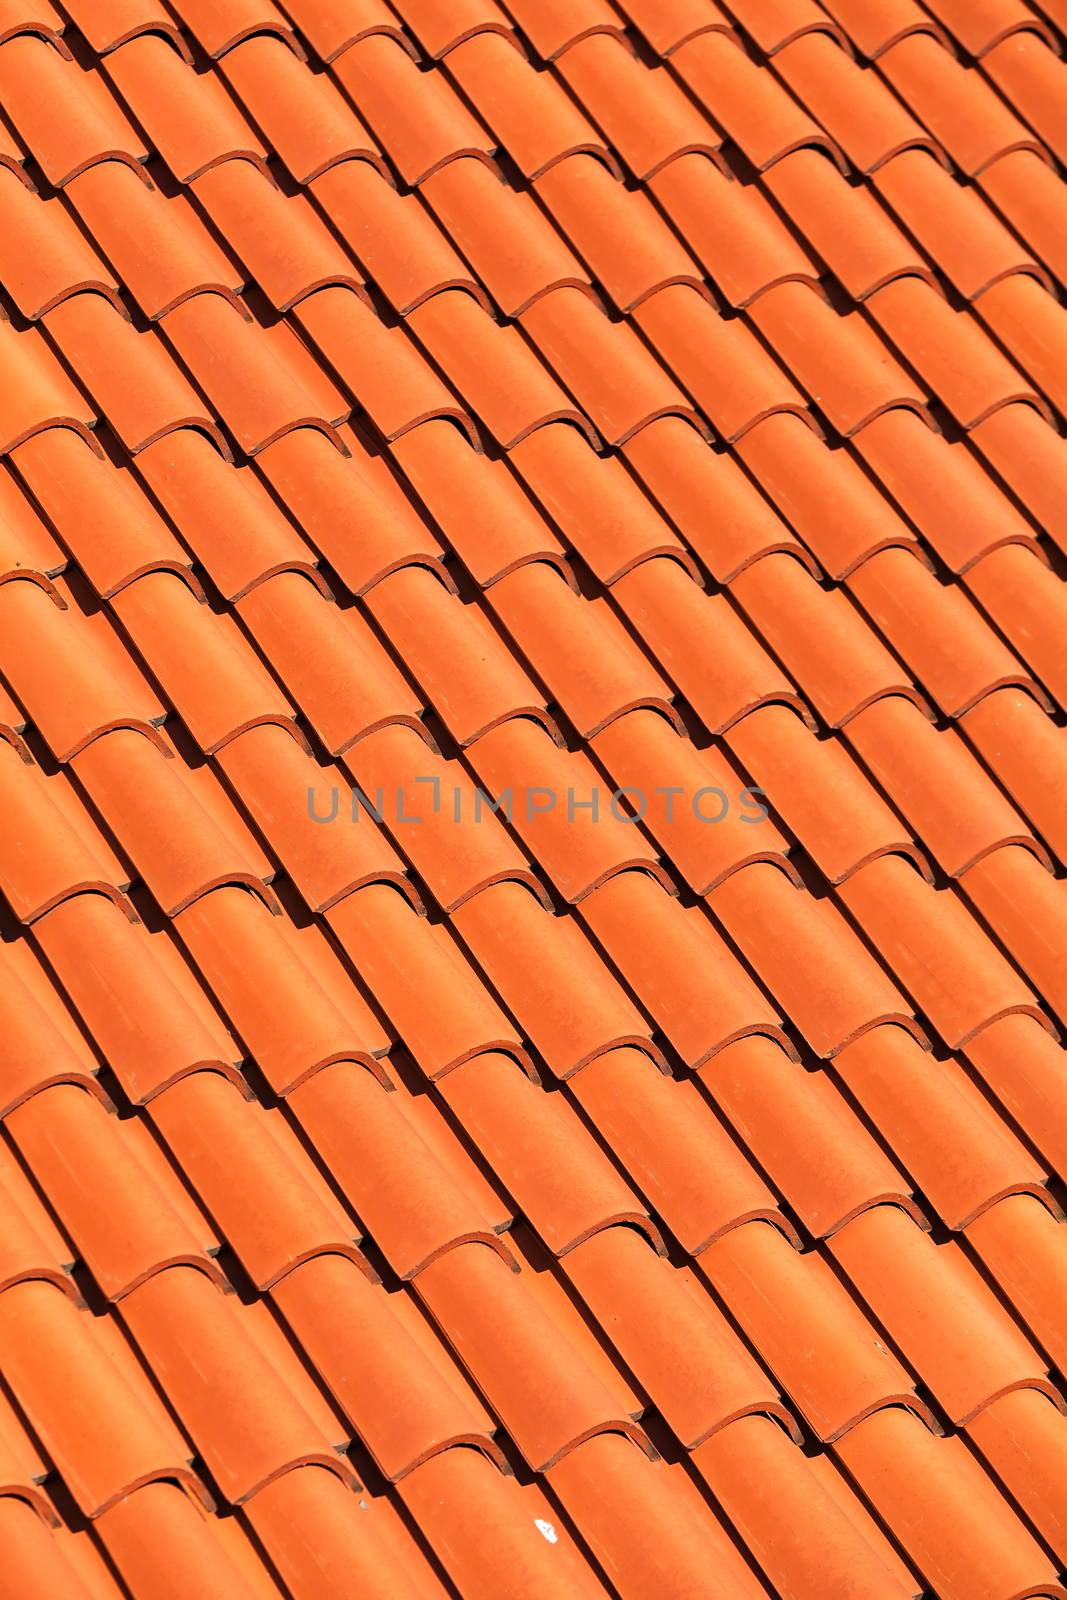 pattern detail of orange ceramic roof tiles